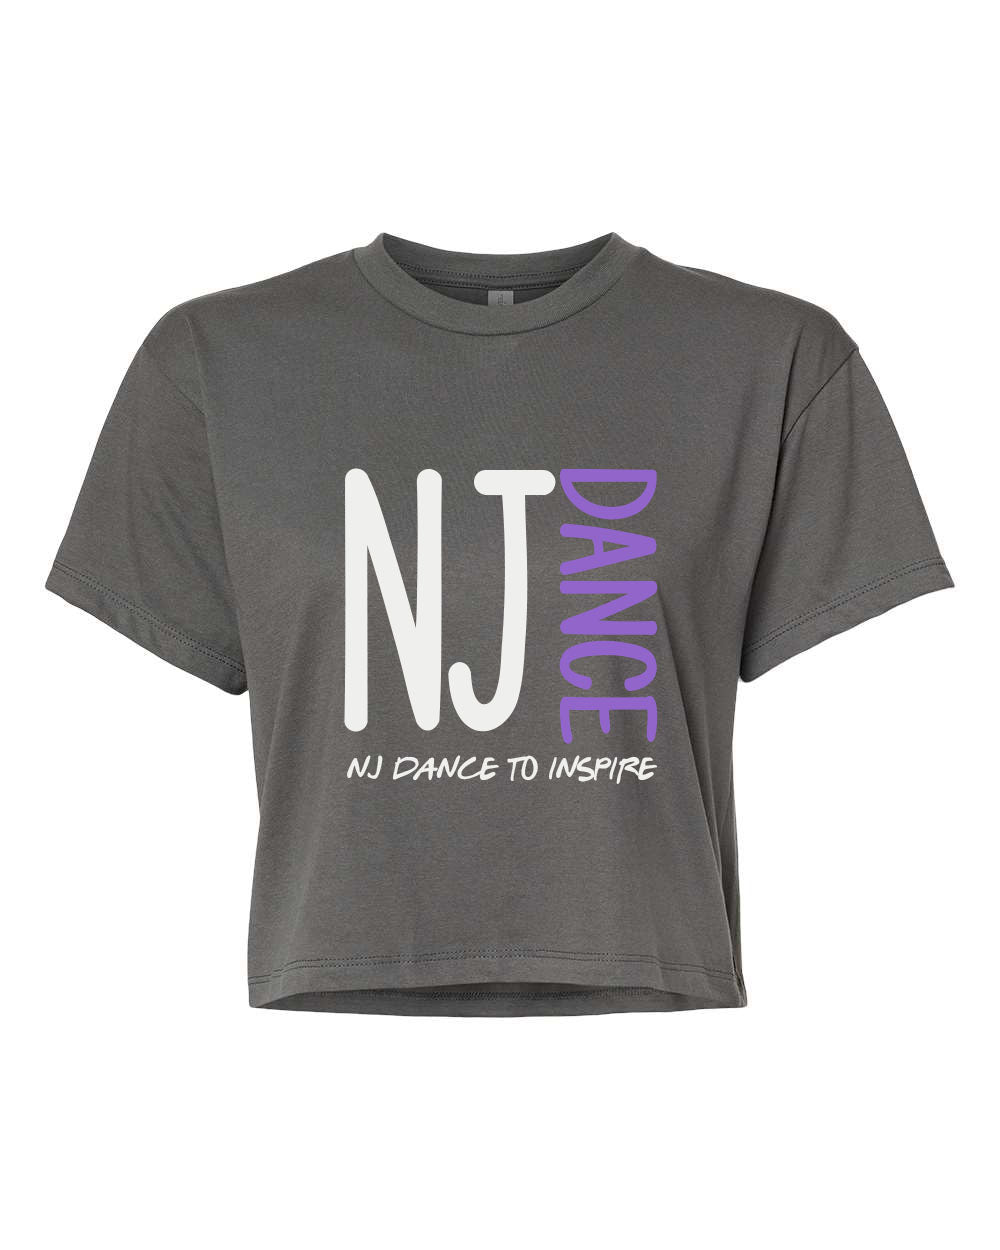 NJ Dance design 3 Crop Top